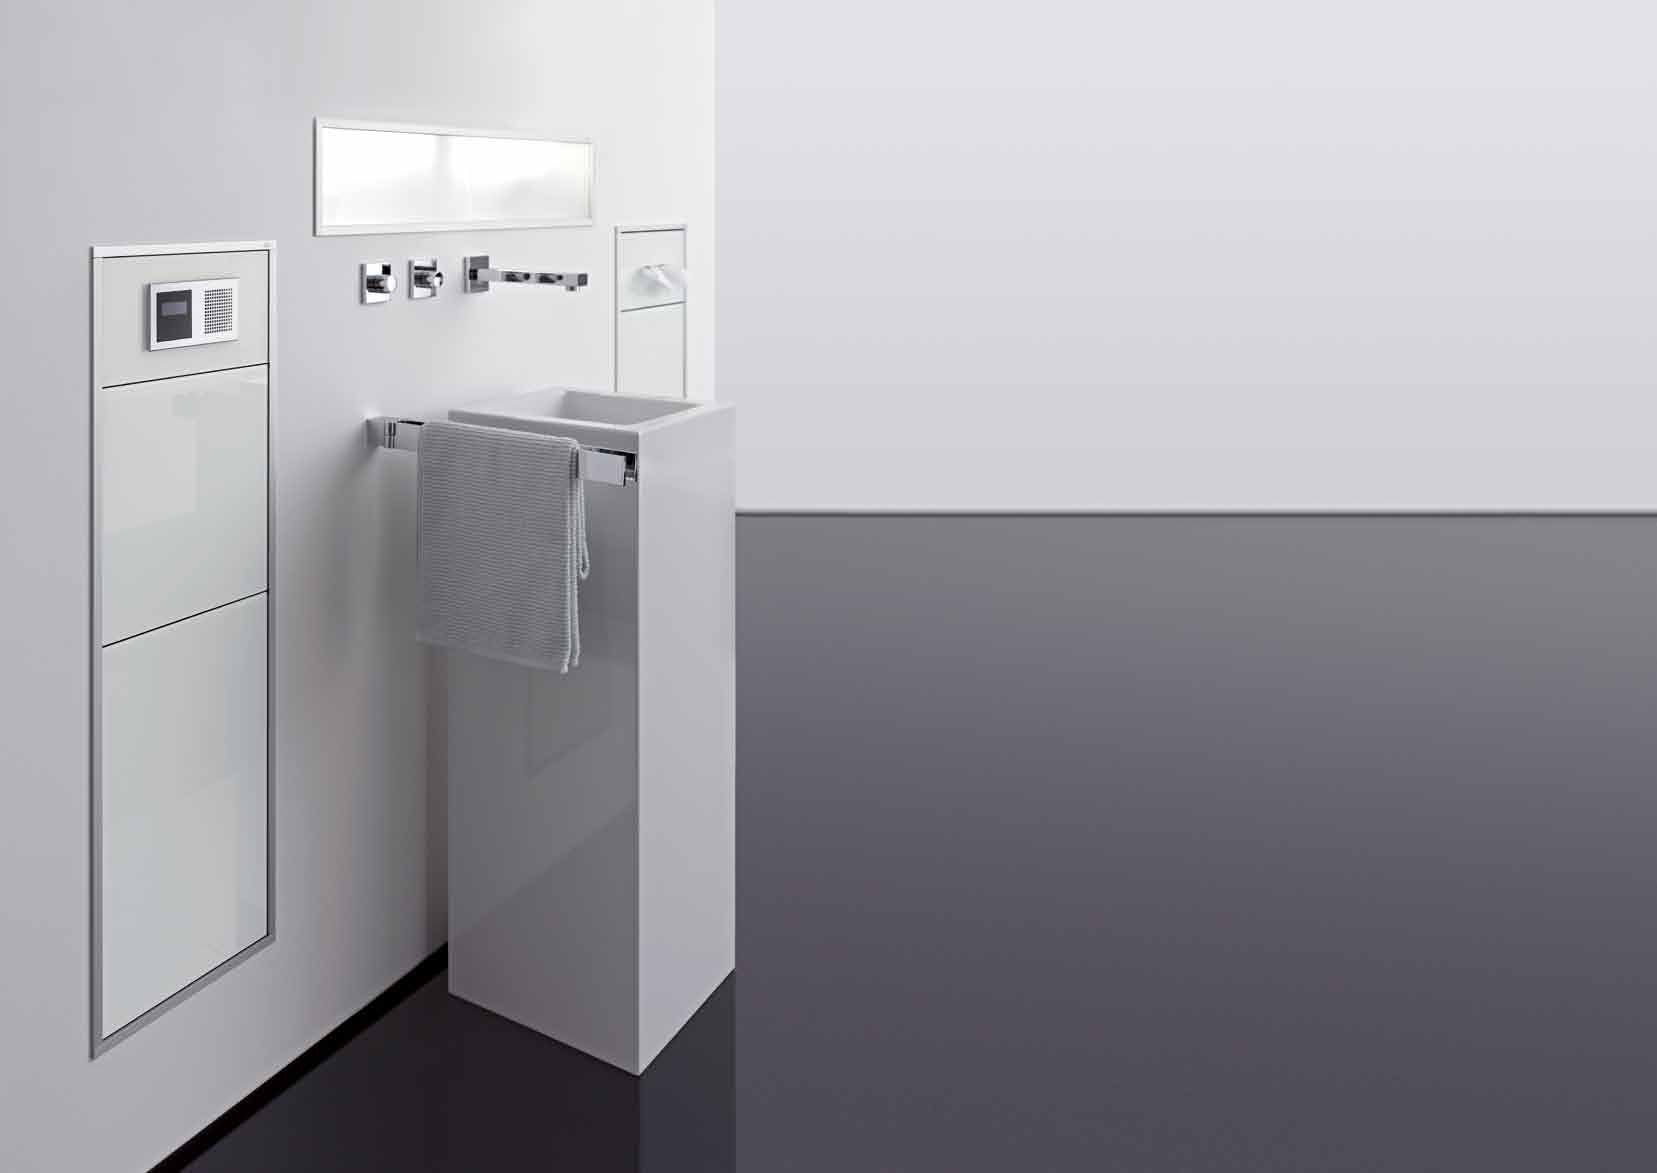 emcoasis Schafft Raum Creates space Platz für Komfort, Raum für Persönliches, Ort der Entfaltung. Die Module der Serie emcoasis vereinen alle Funktionen rund um Waschtisch und WC.